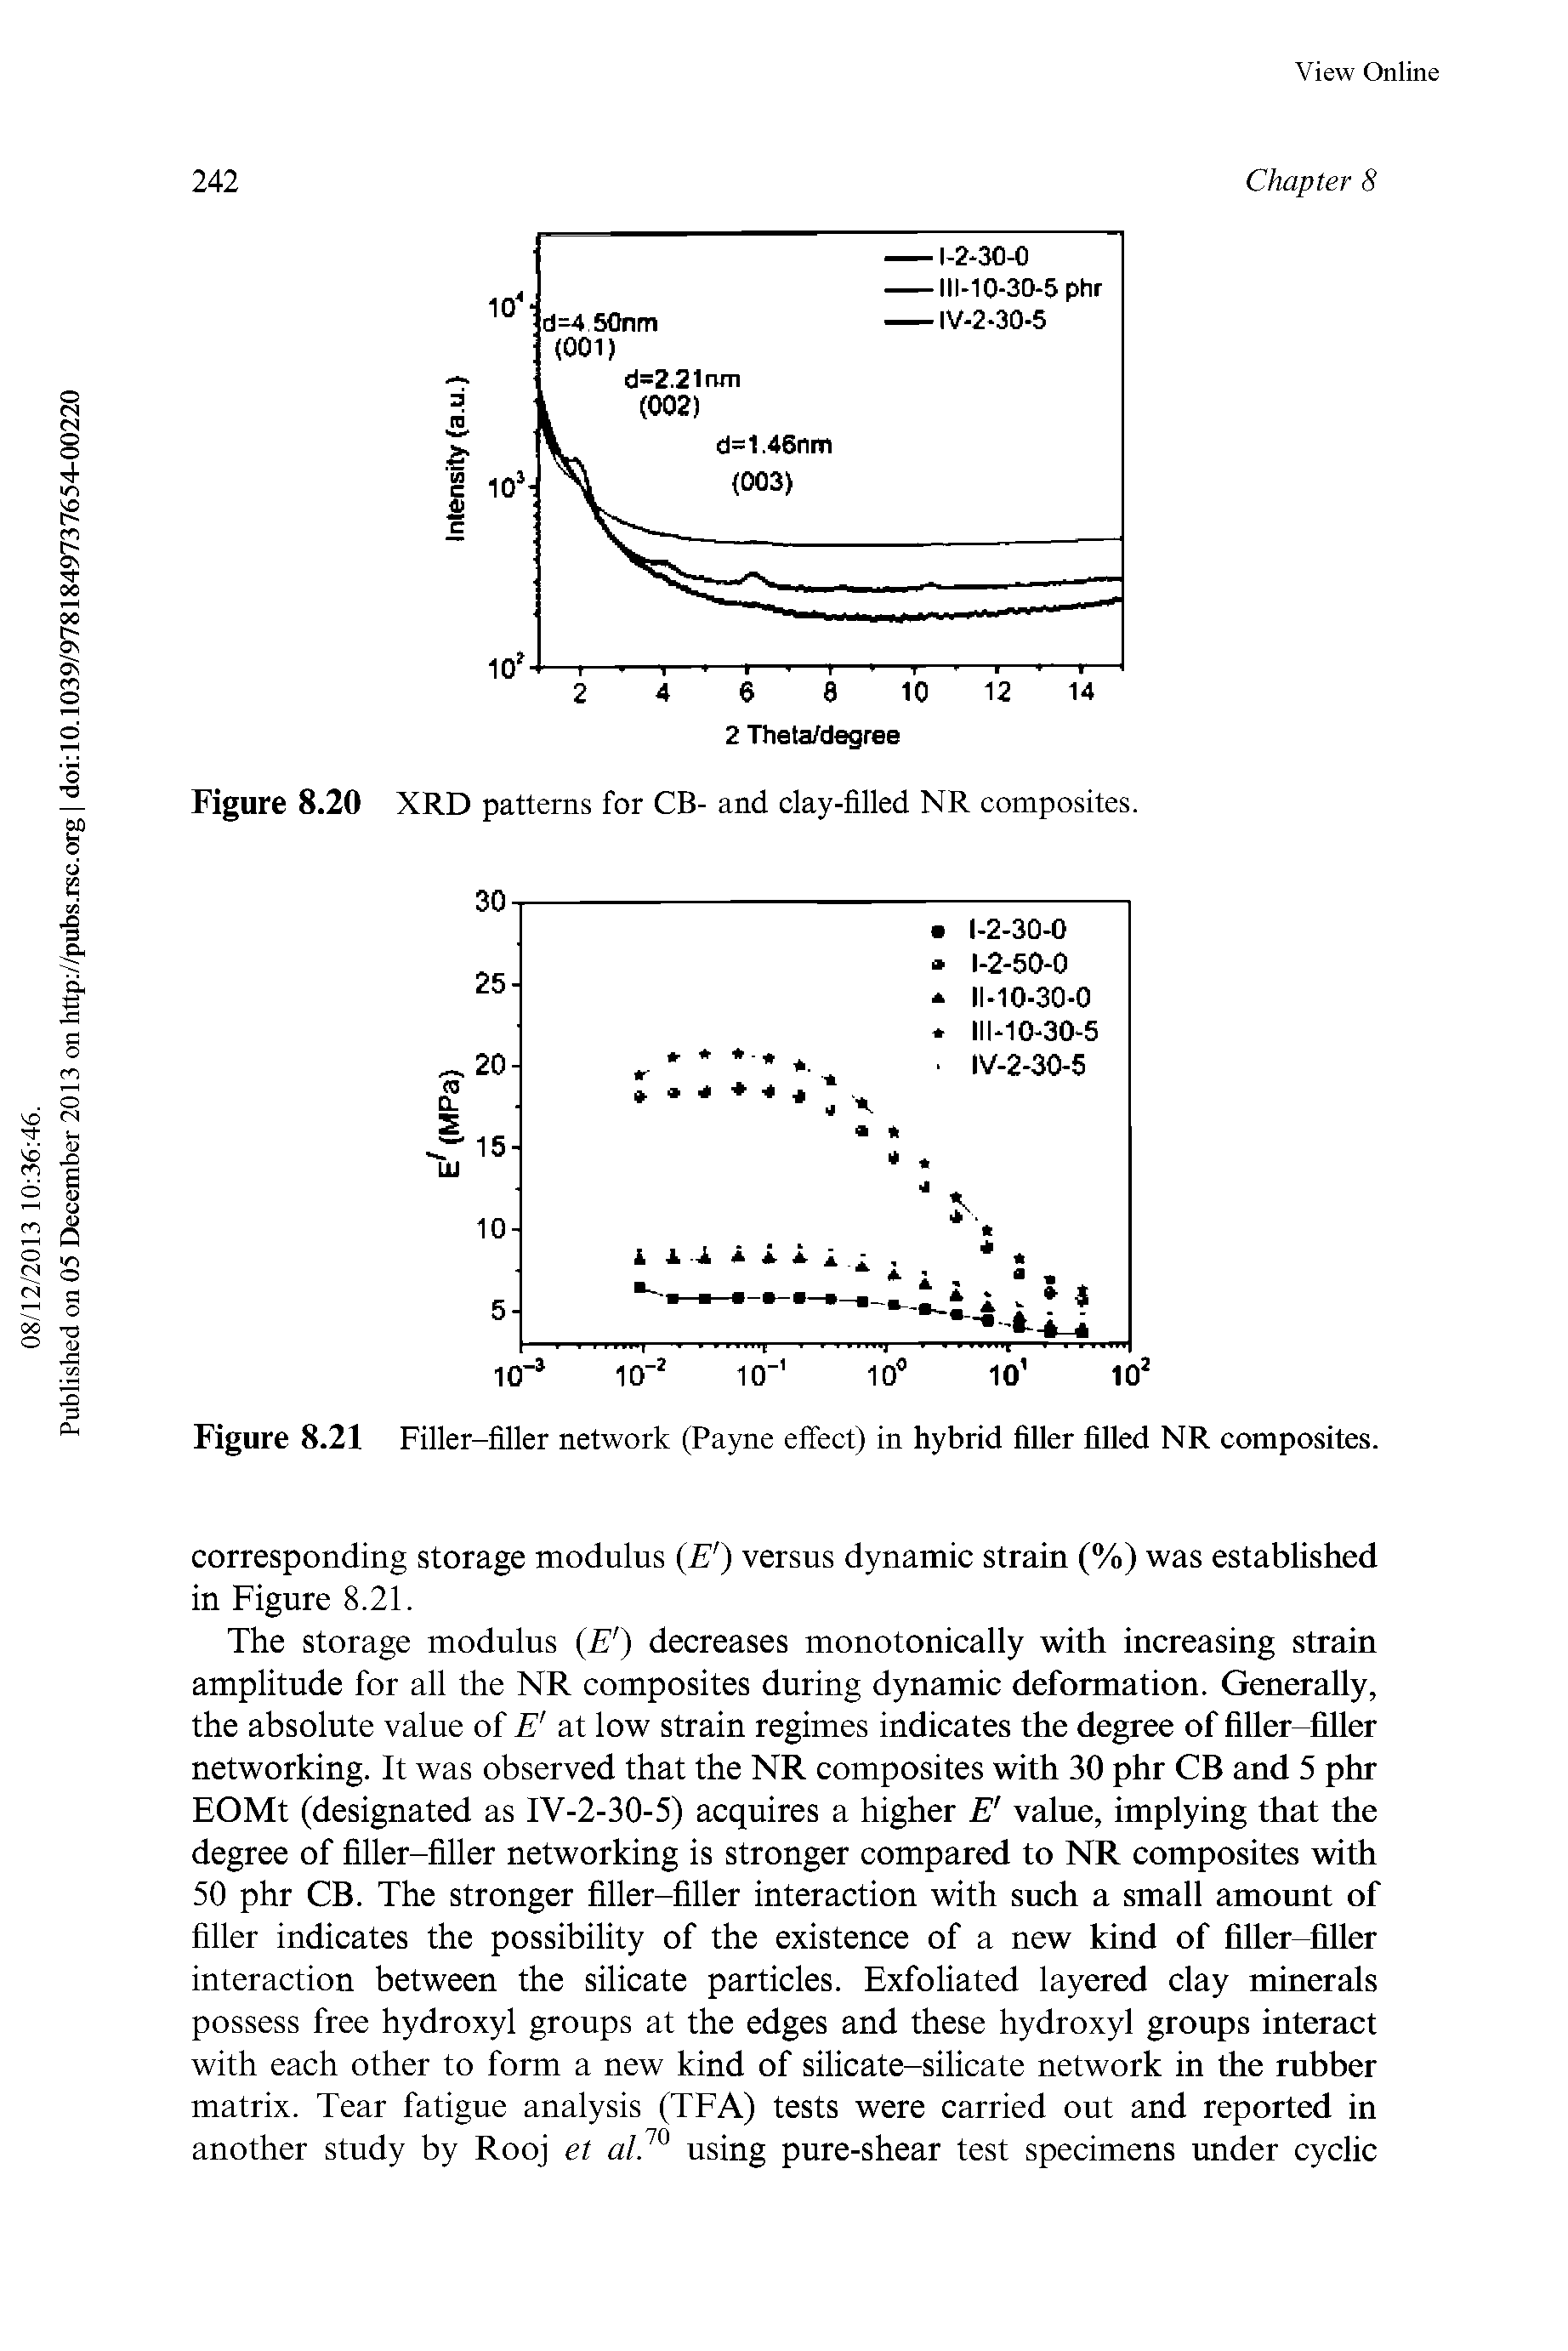 Figure 8.21 Filler-filler network (Payne effect) in hybrid filler filled NR composites.